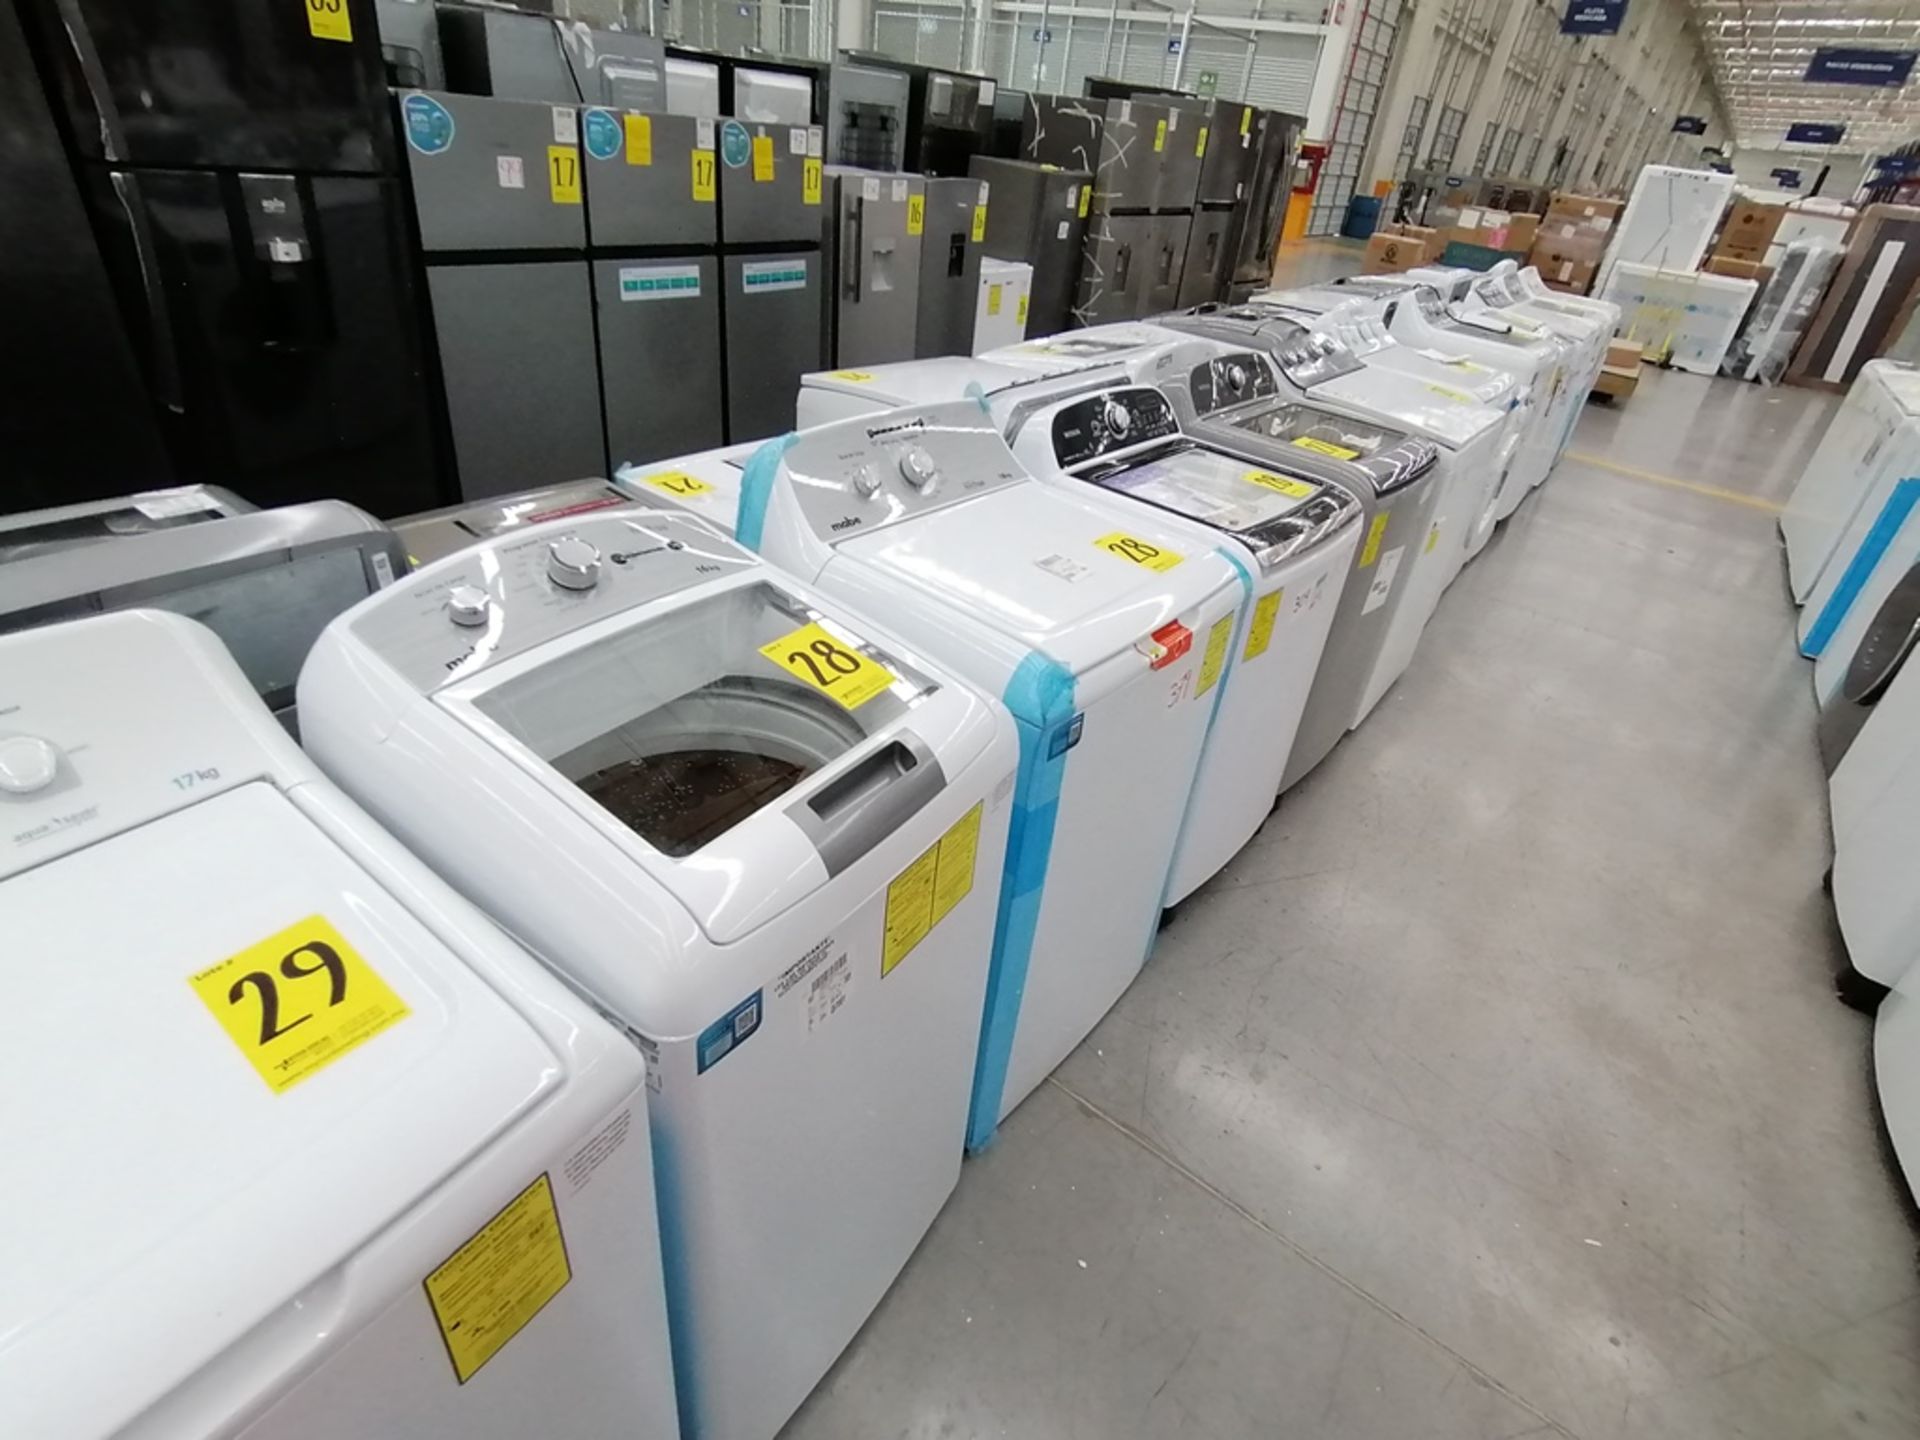 Lote de 3 lavadoras contiene: 1 Lavadora de 16KG, Marca Mabe, Modelo LMA46102VBAB02, Serie 2108S802 - Image 17 of 29